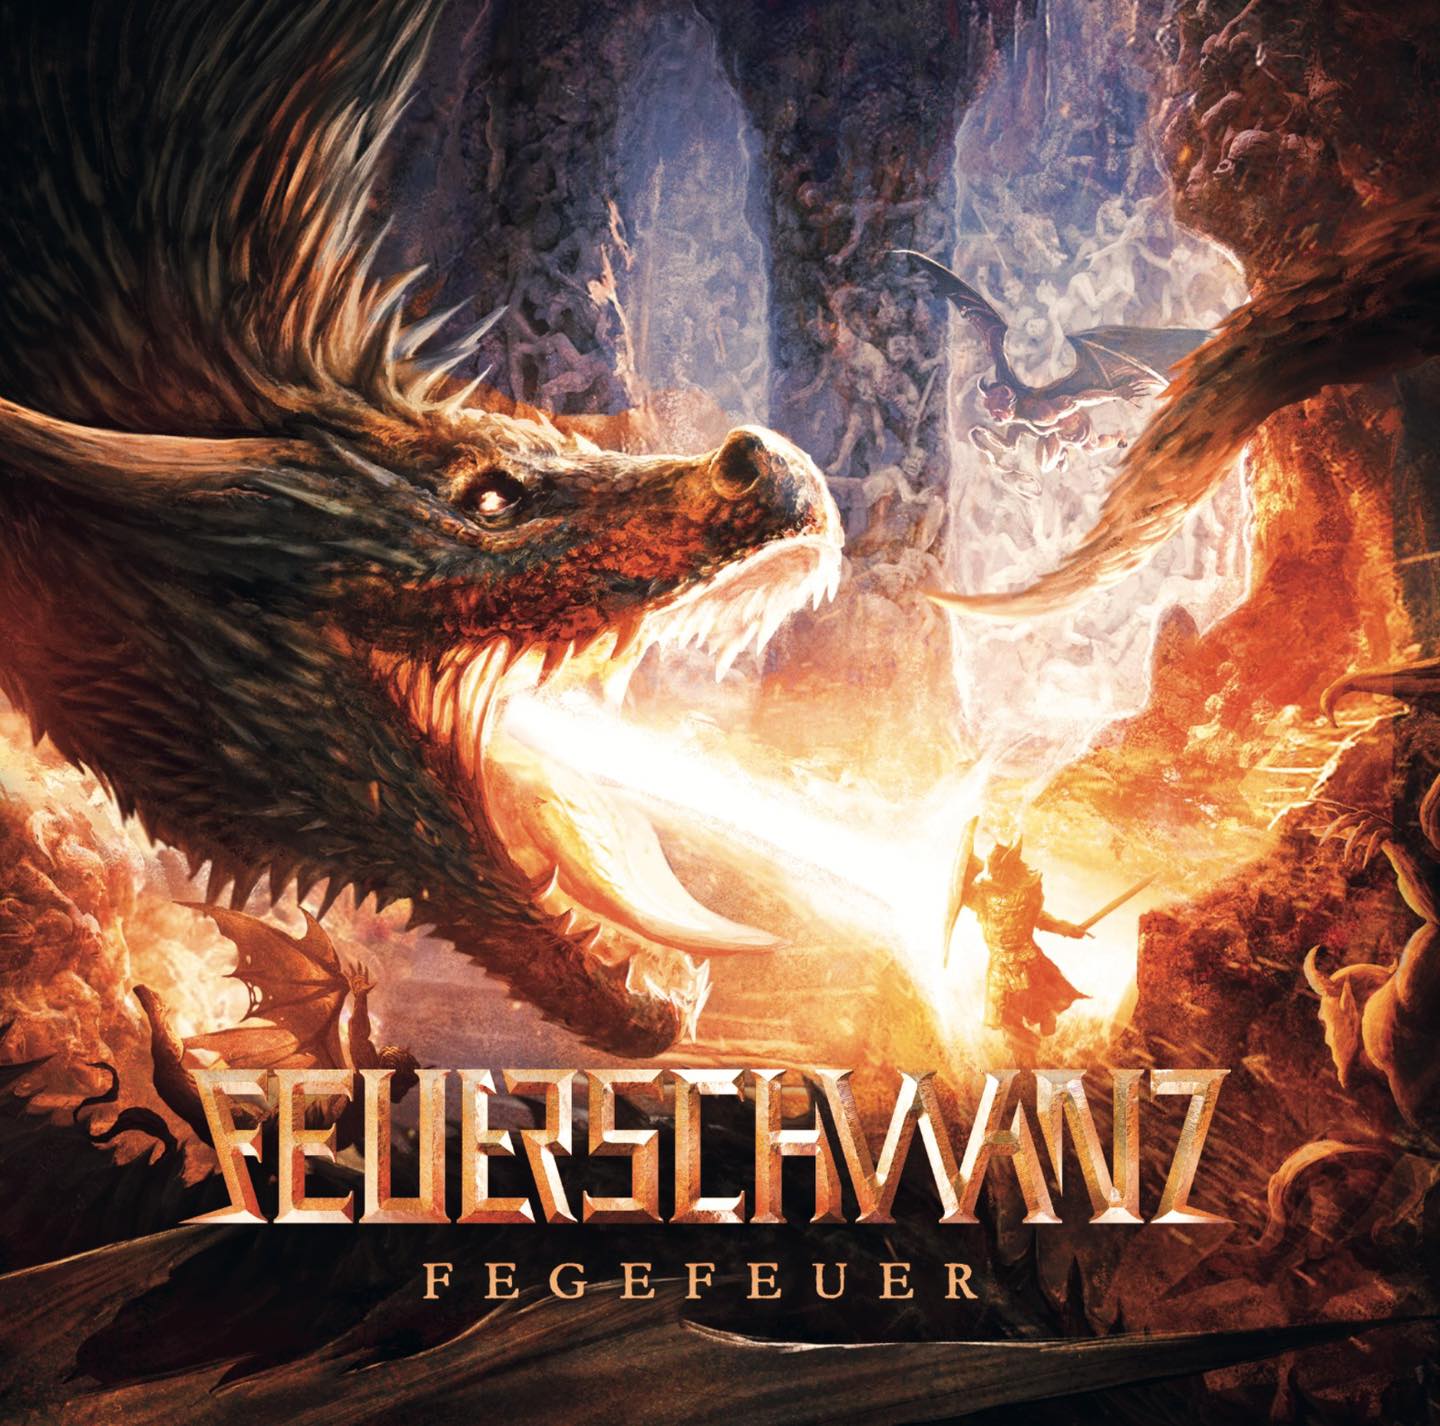 [Reseña] Feuerschwanz va a toda máquina con su nuevo disco “Fegefeuer”